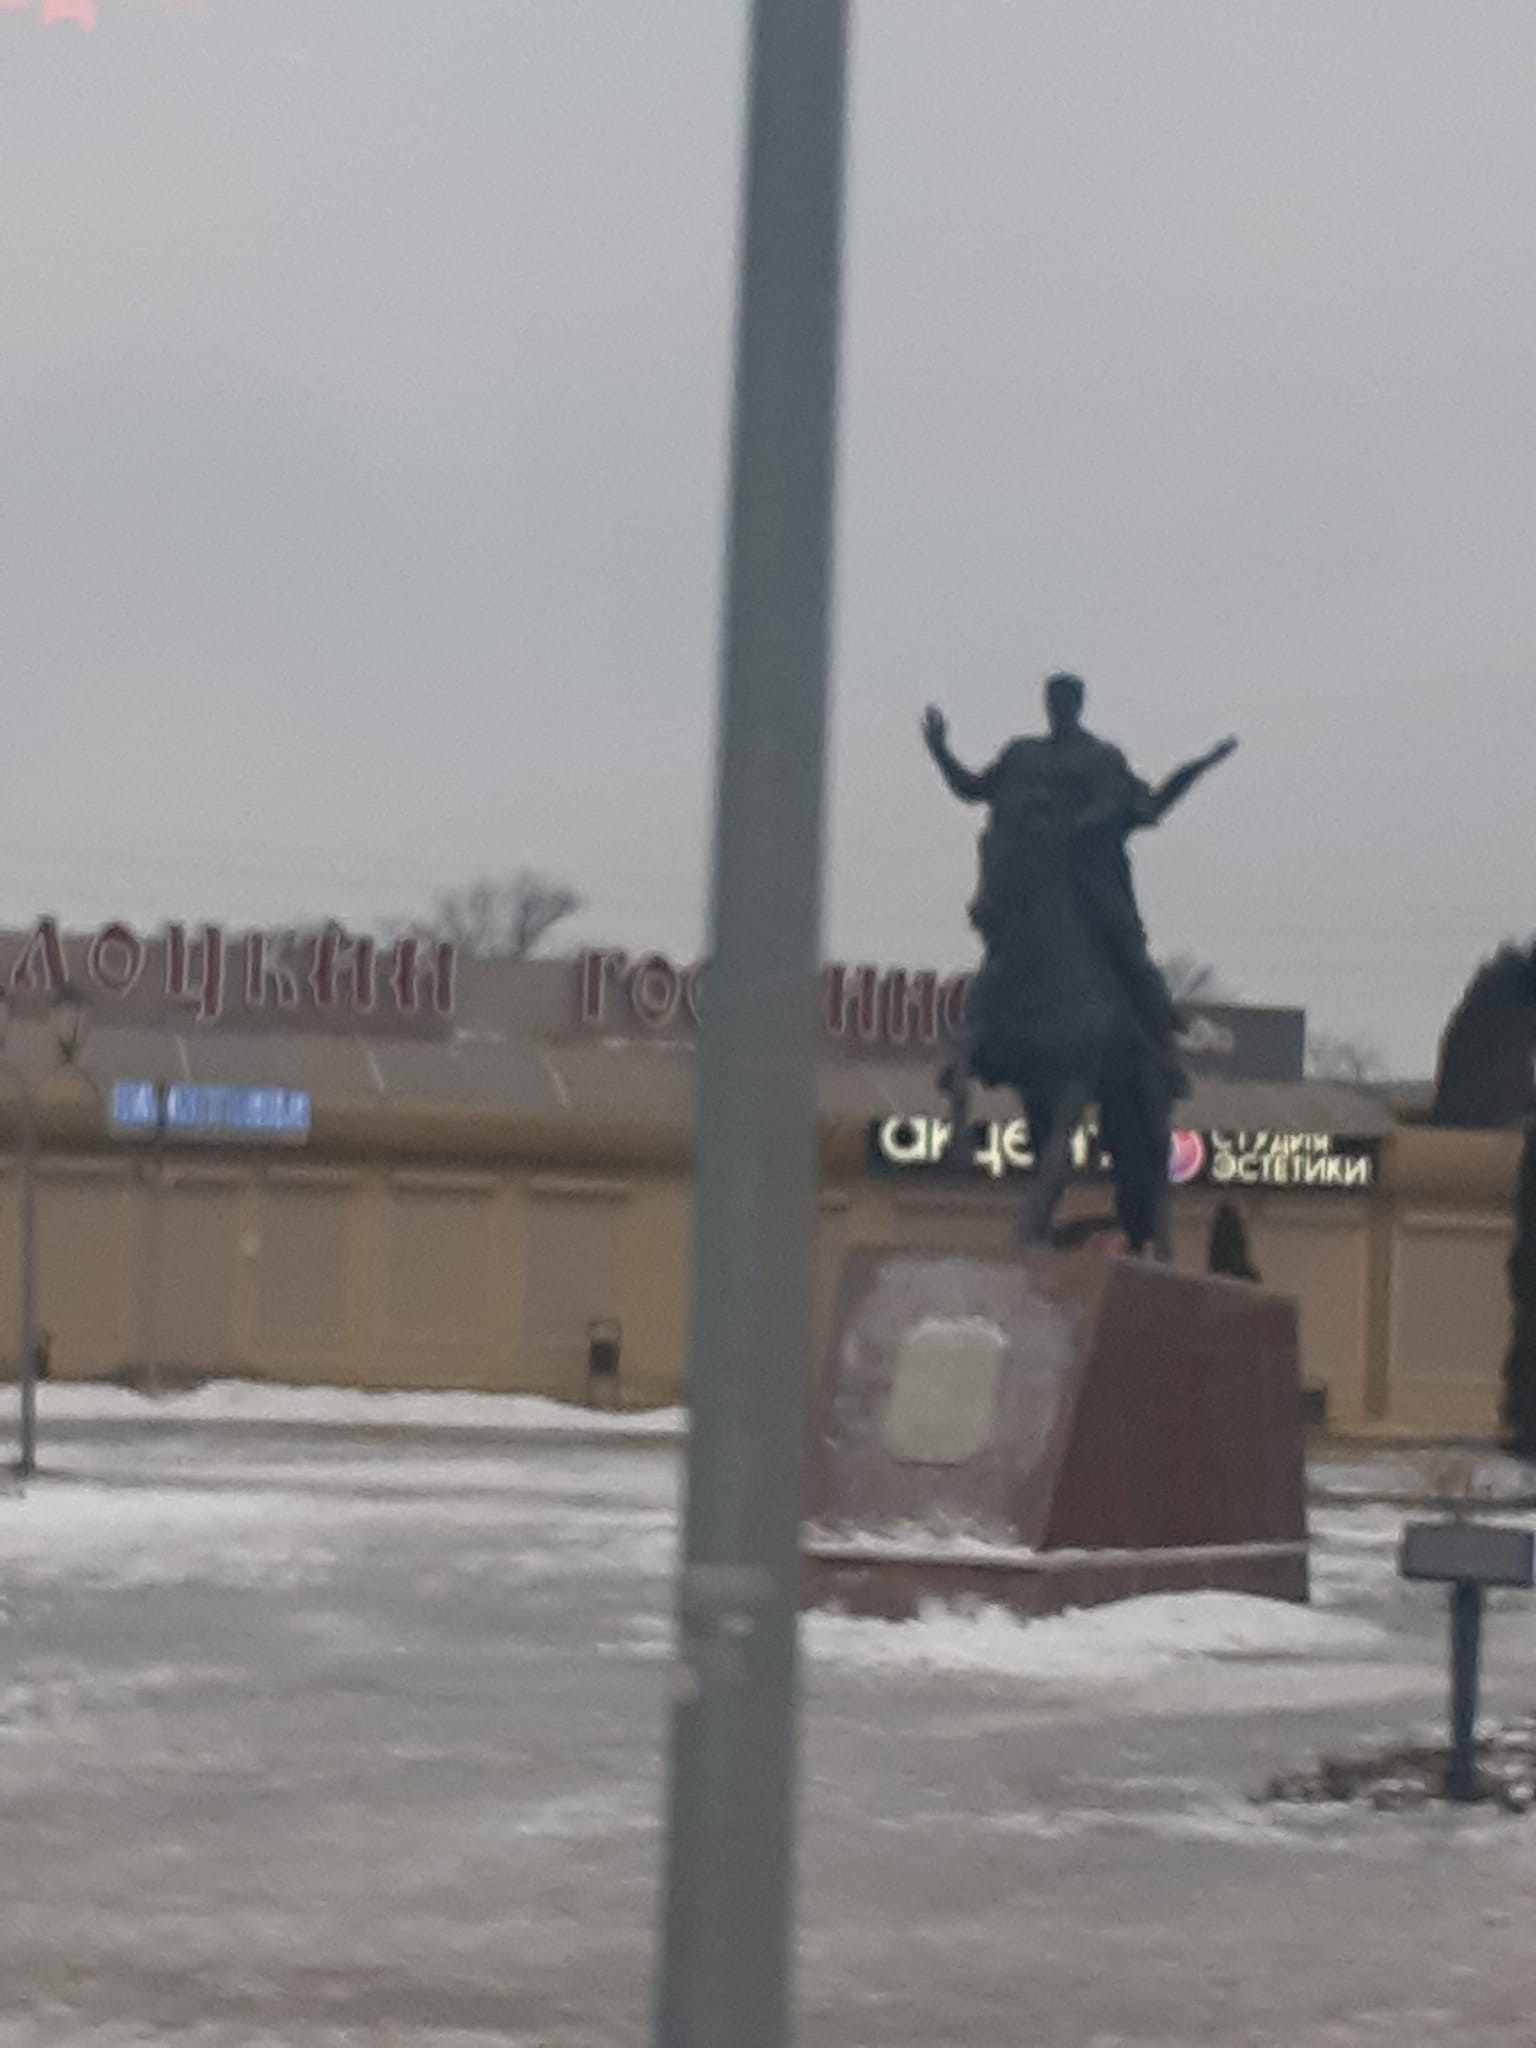 Всеслав Чародей, Belarus